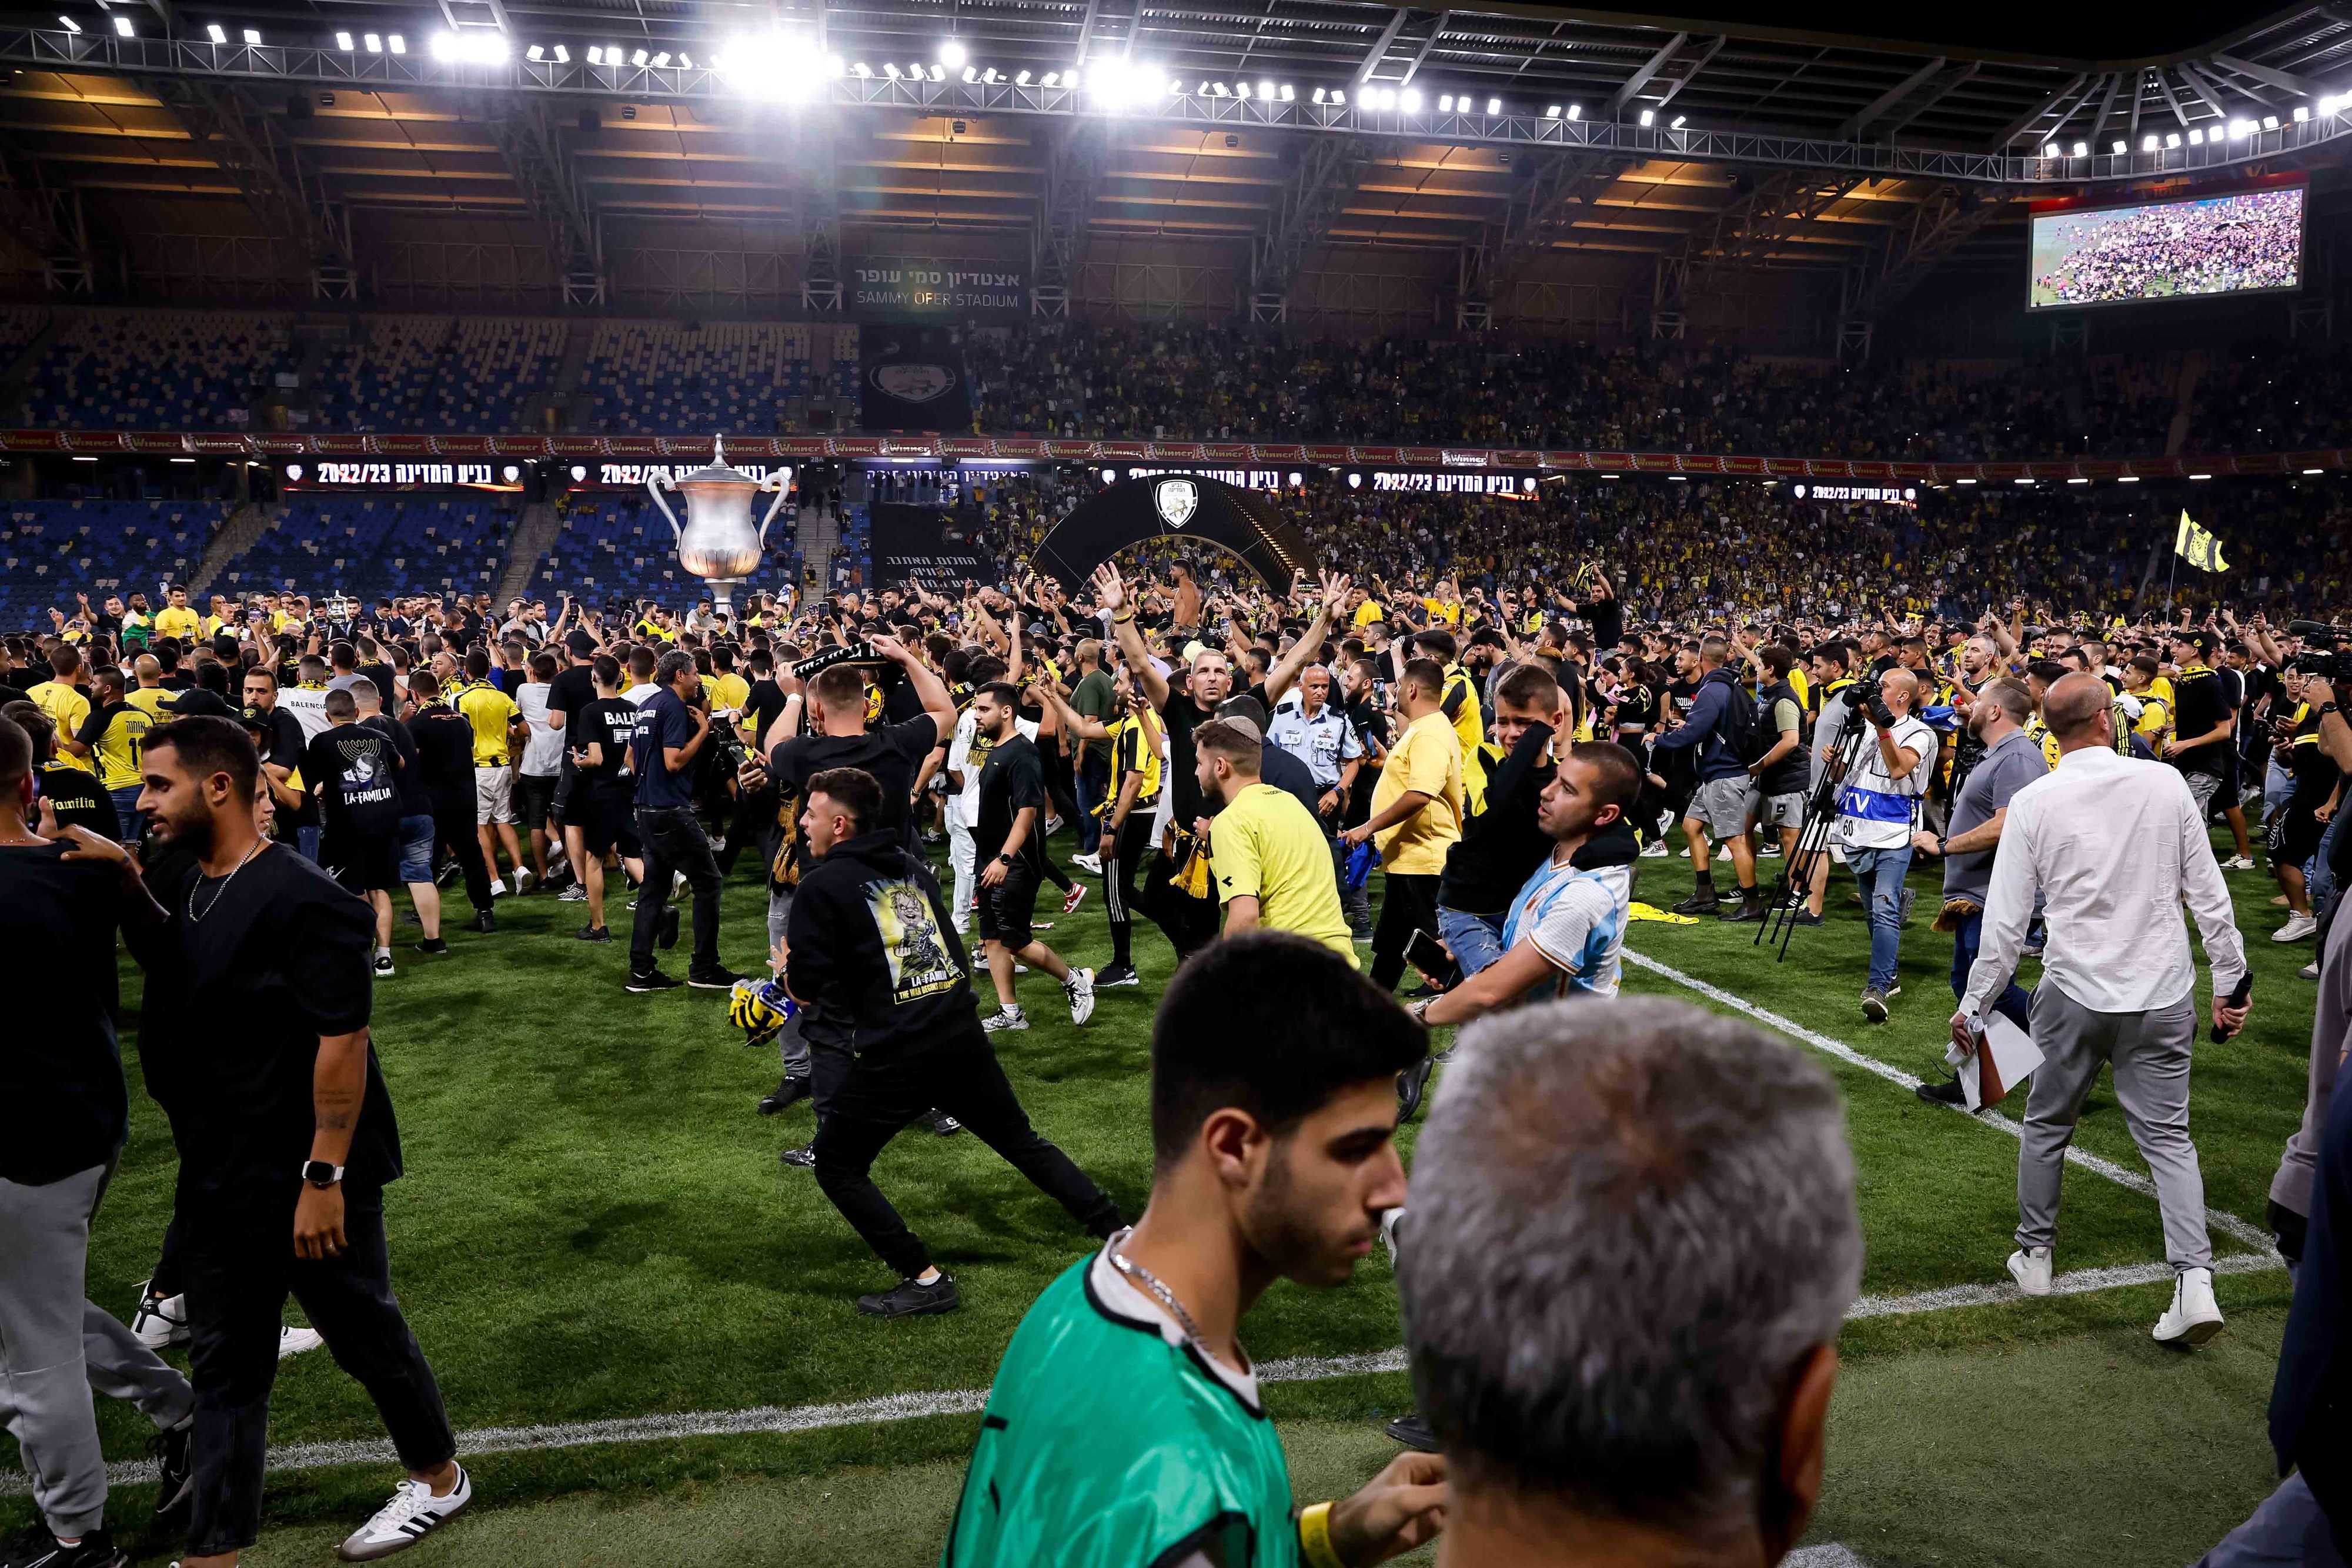 אוהדי בית"ר ירושלים פורצים למגרש בגמר גביע המדינה